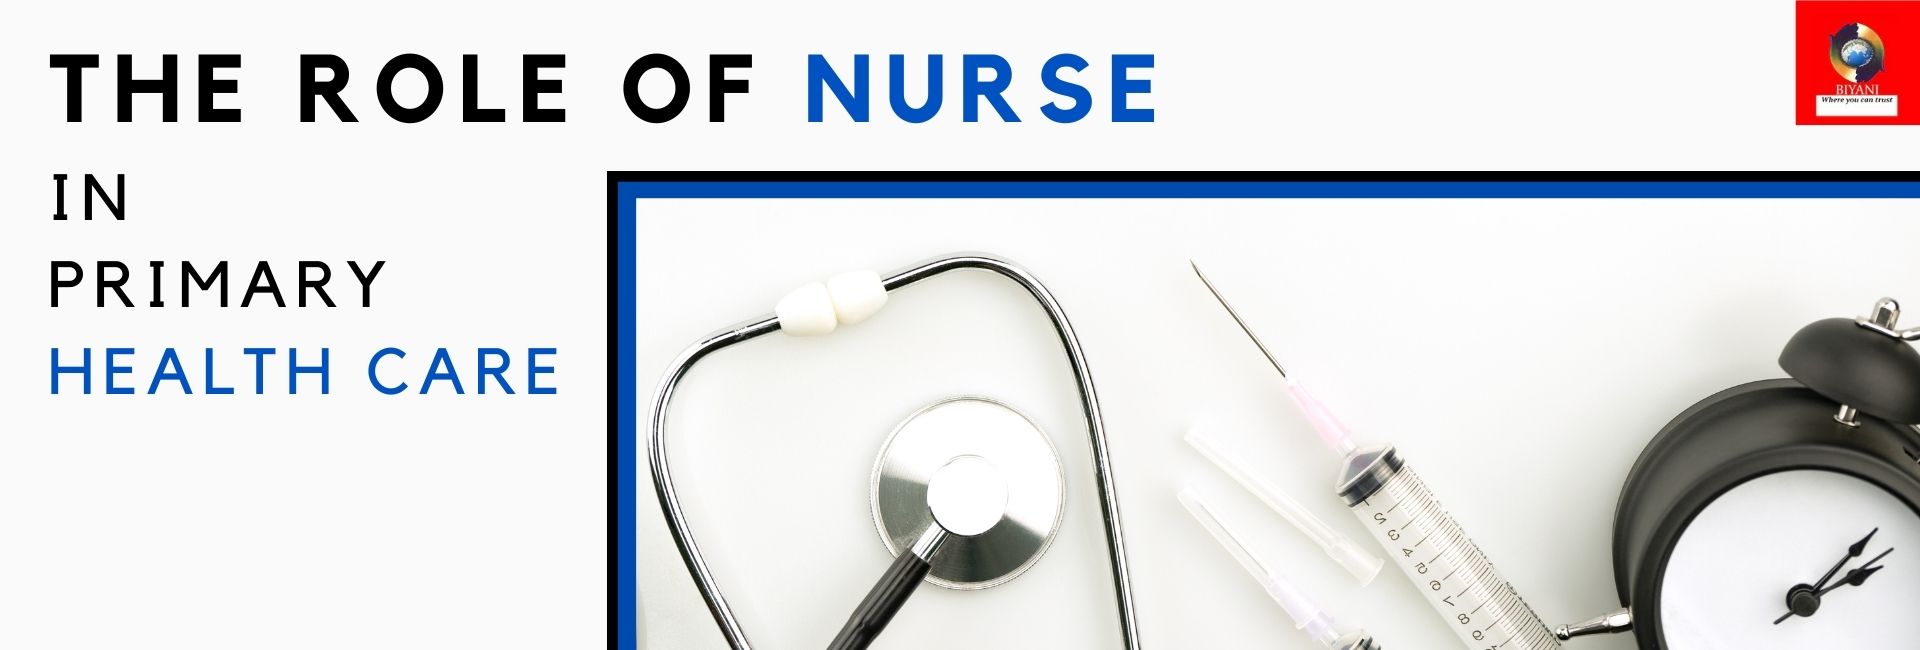 the role of nurse